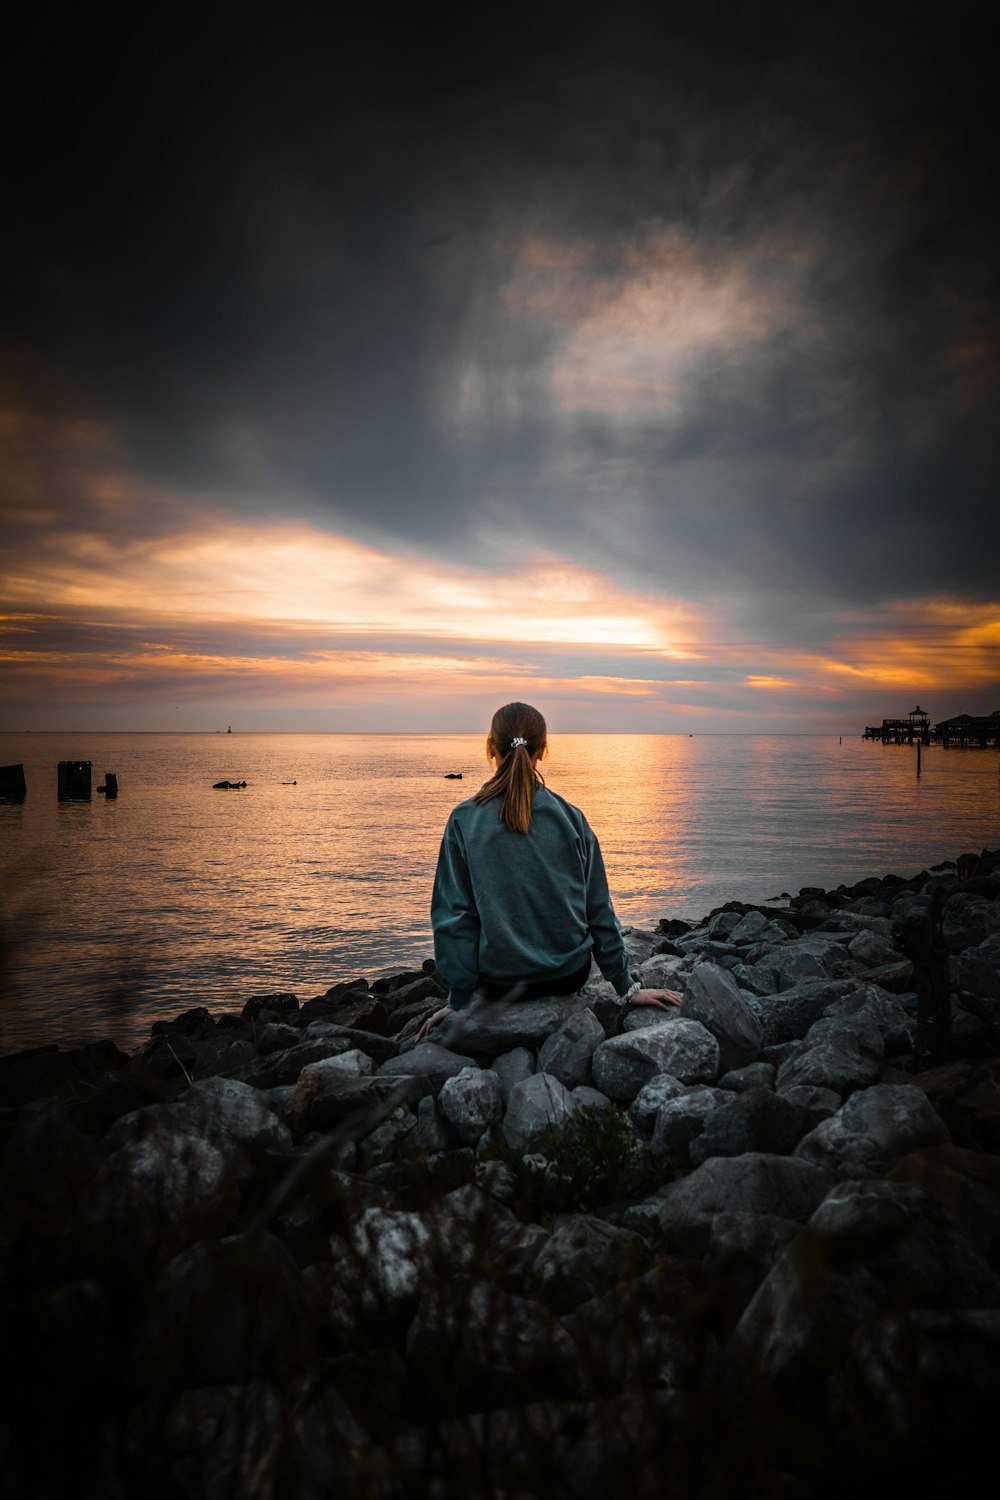 푸른 긴 소매 셔츠를 입은 여자는 일몰 동안 수역 근처의 회색 바위에 앉아 있다